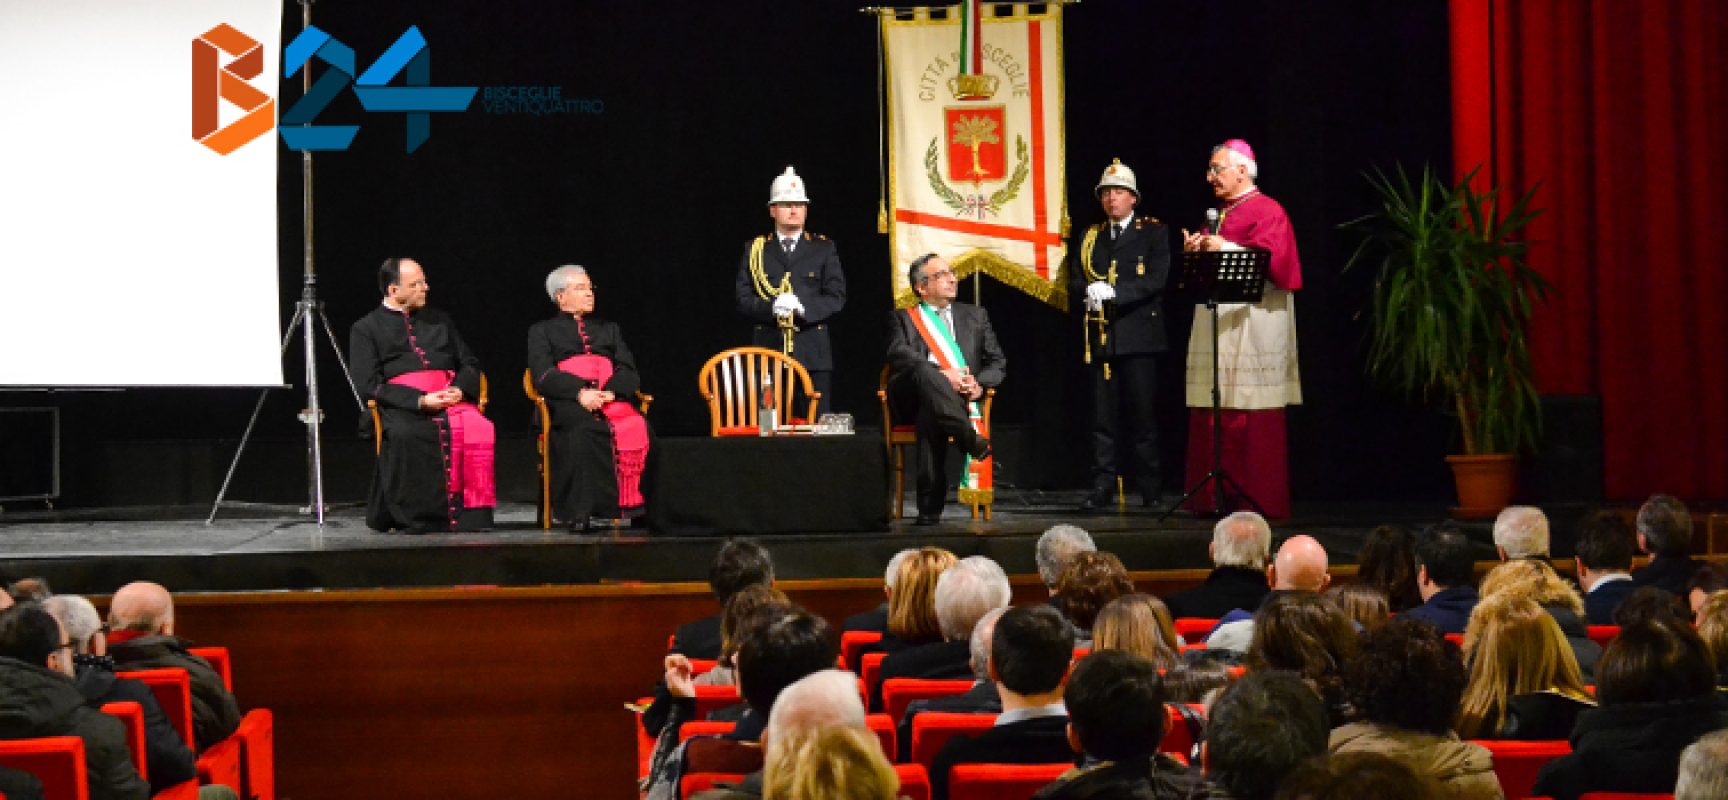 La comunità biscegliese ha dato il benvenuto al nuovo arcivescovo Monsignor D’Ascenzo / FOTO